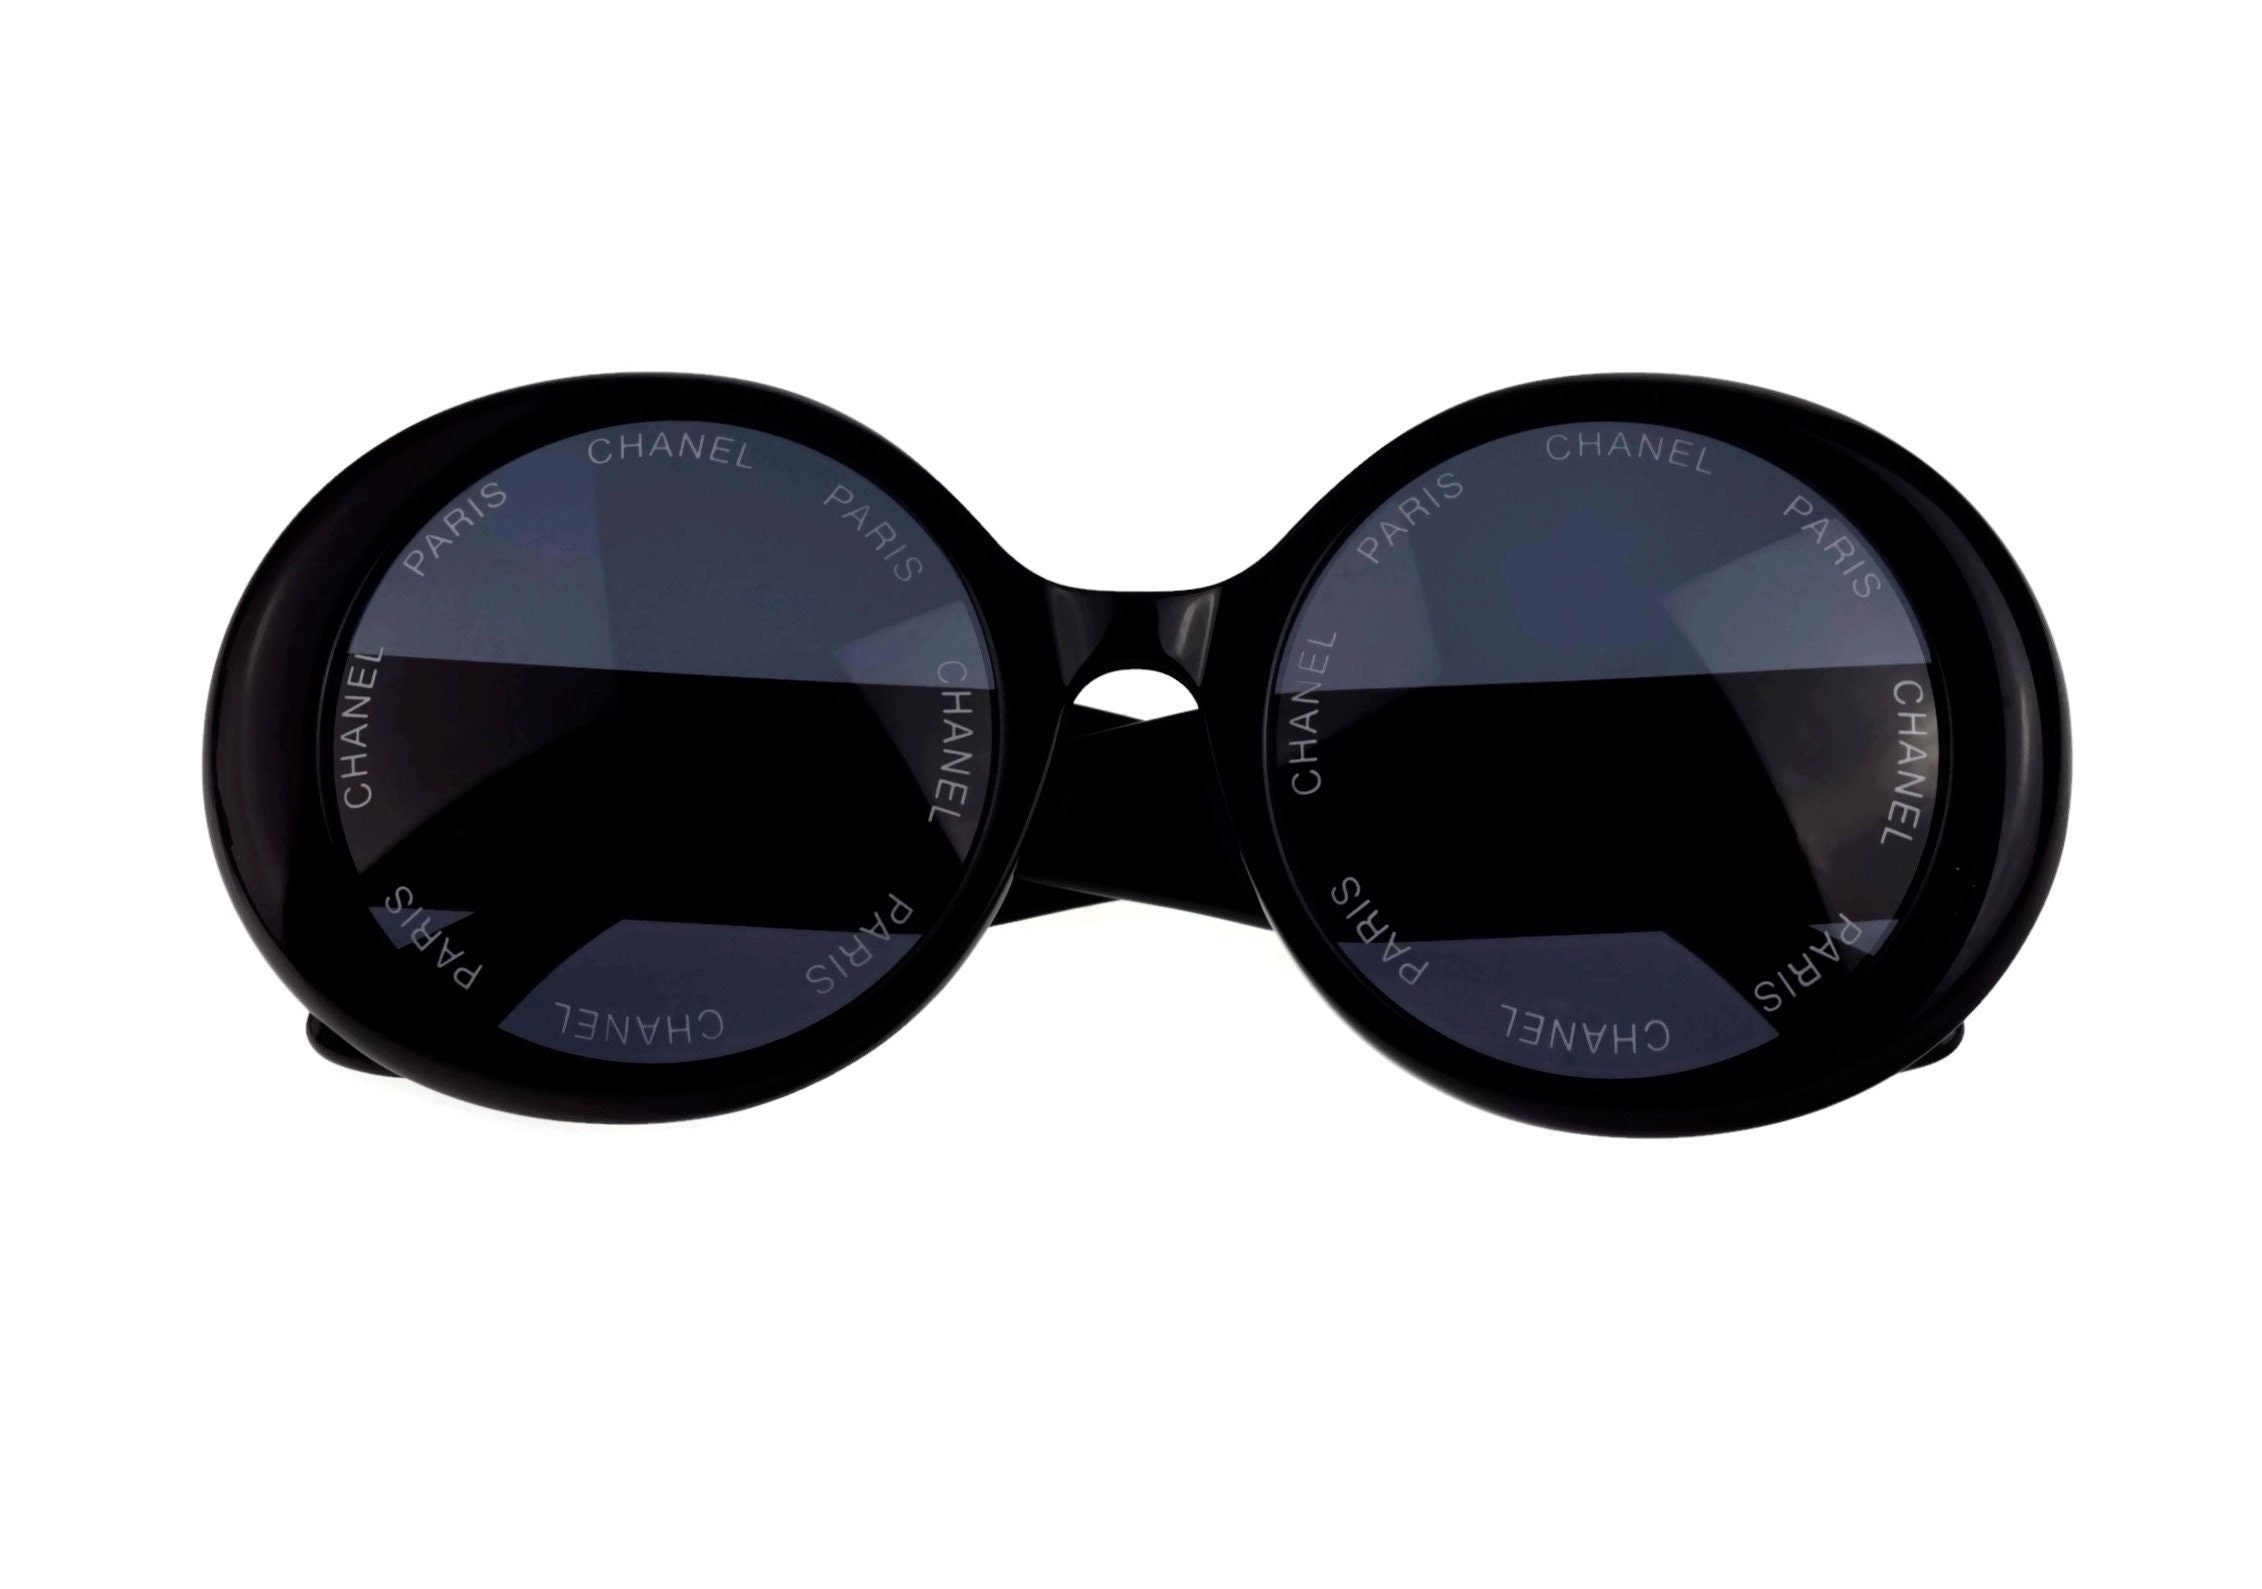 Vintage 1993 Iconic CHANEL PARIS Lens Round Black Sunglasses 